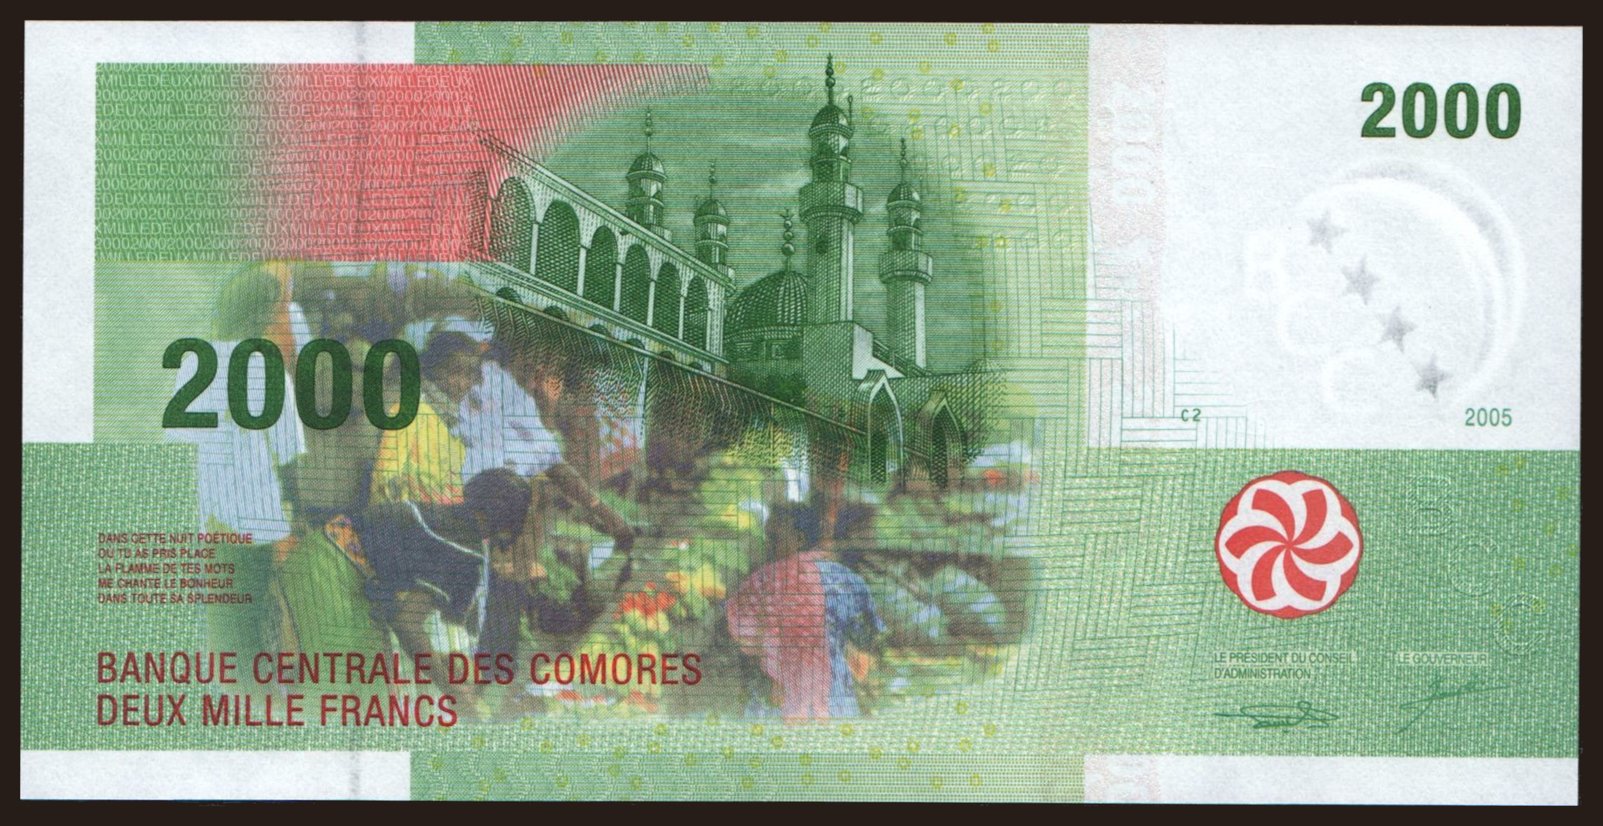 2000 francs, 2005